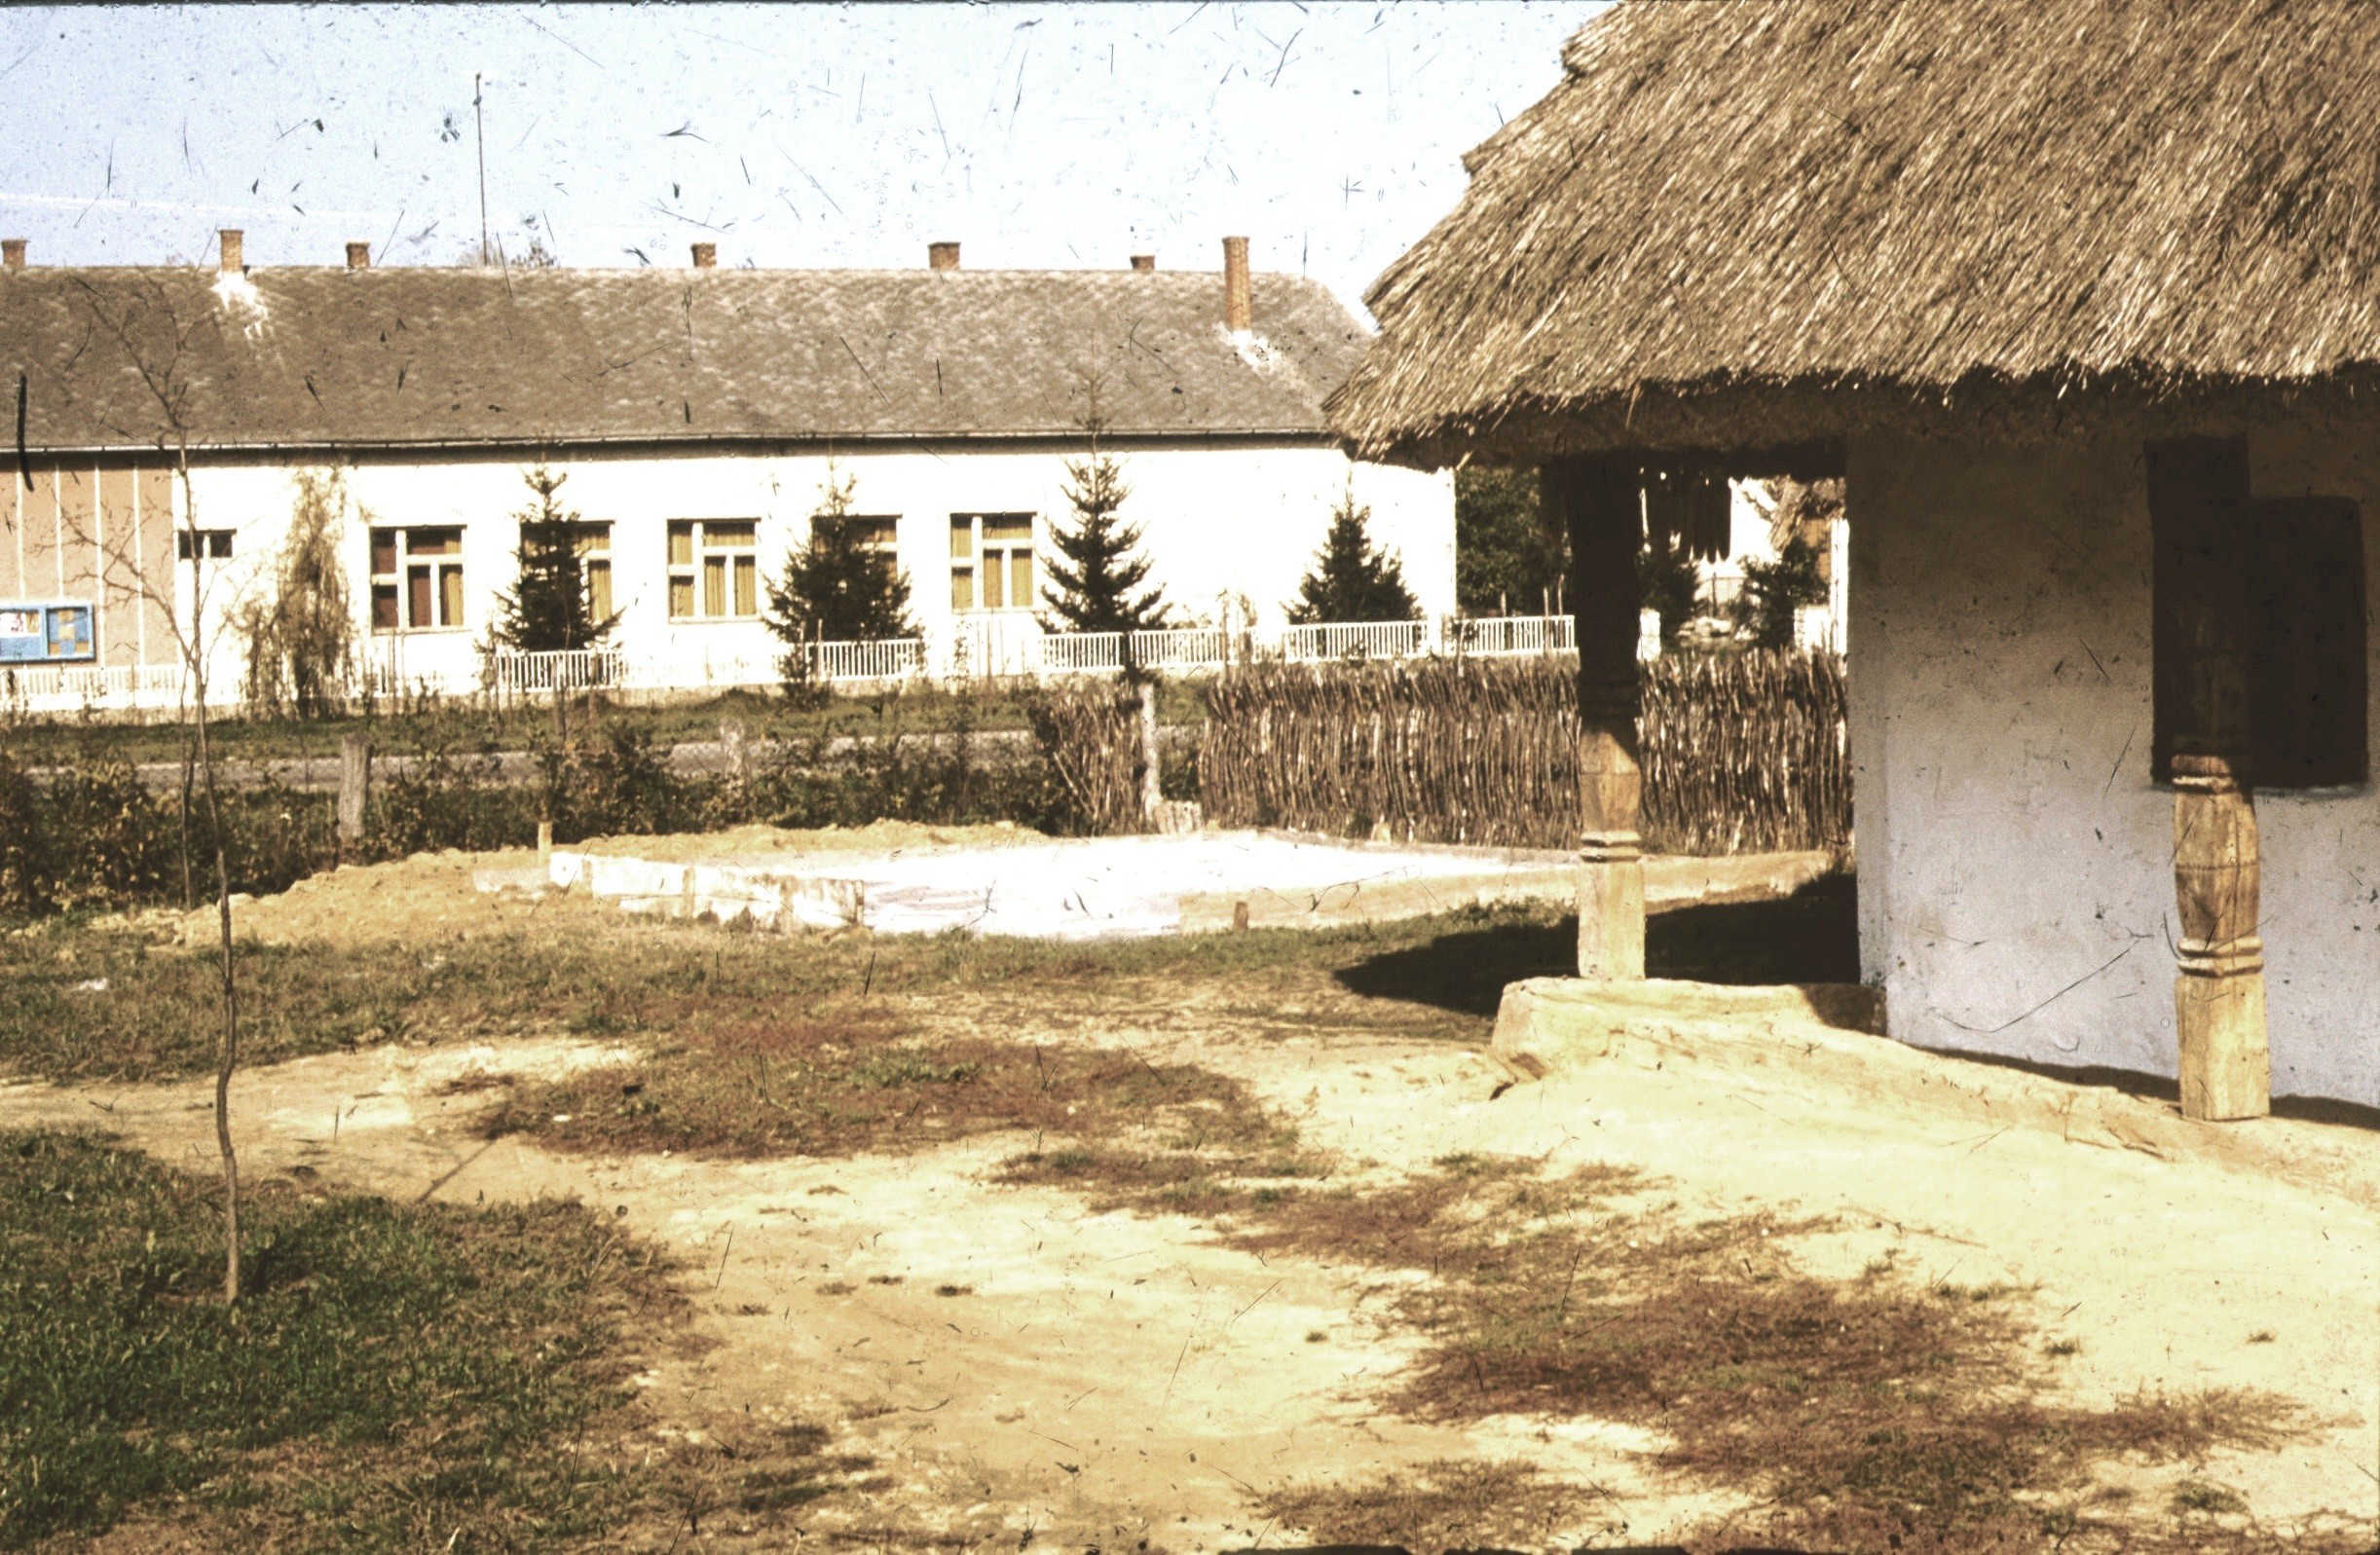 A bodvicai istálló beton alapja DNy-ról (kisbajomi telek) (Rippl-Rónai Múzeum RR-F)